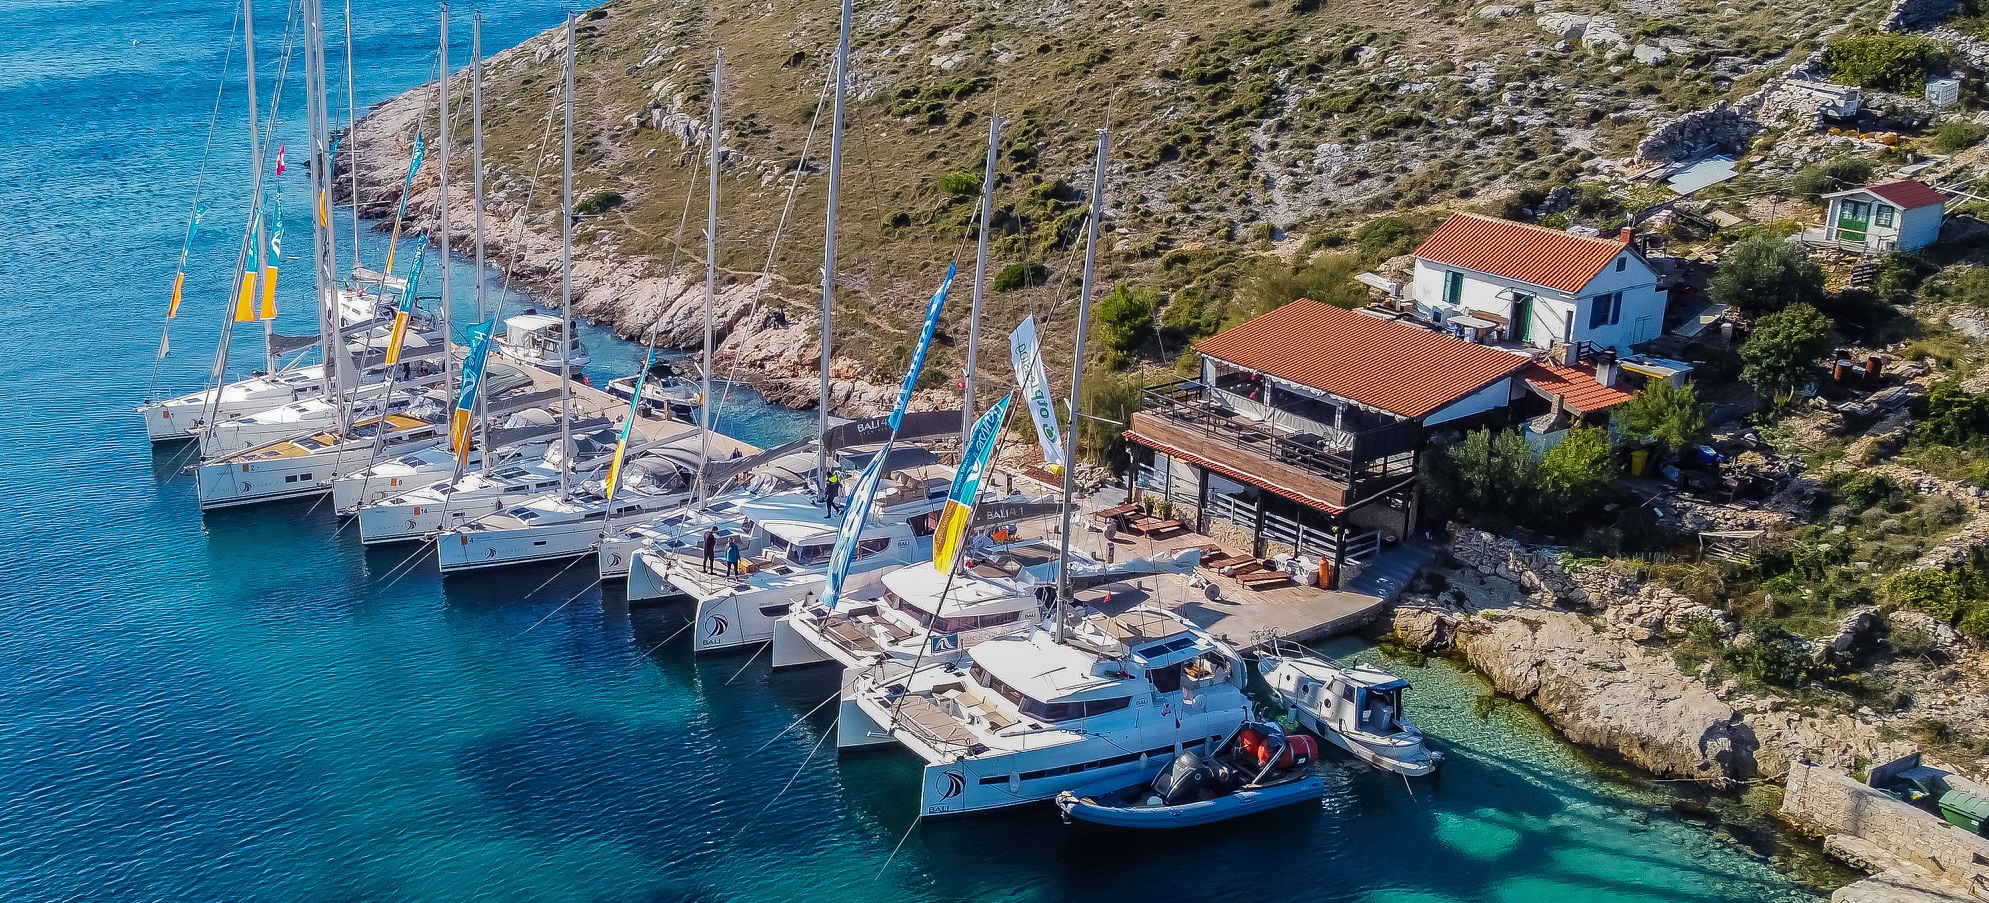 Trogir-Segelroute: Planen Sie Ihren perfekten Urlaub am Meer